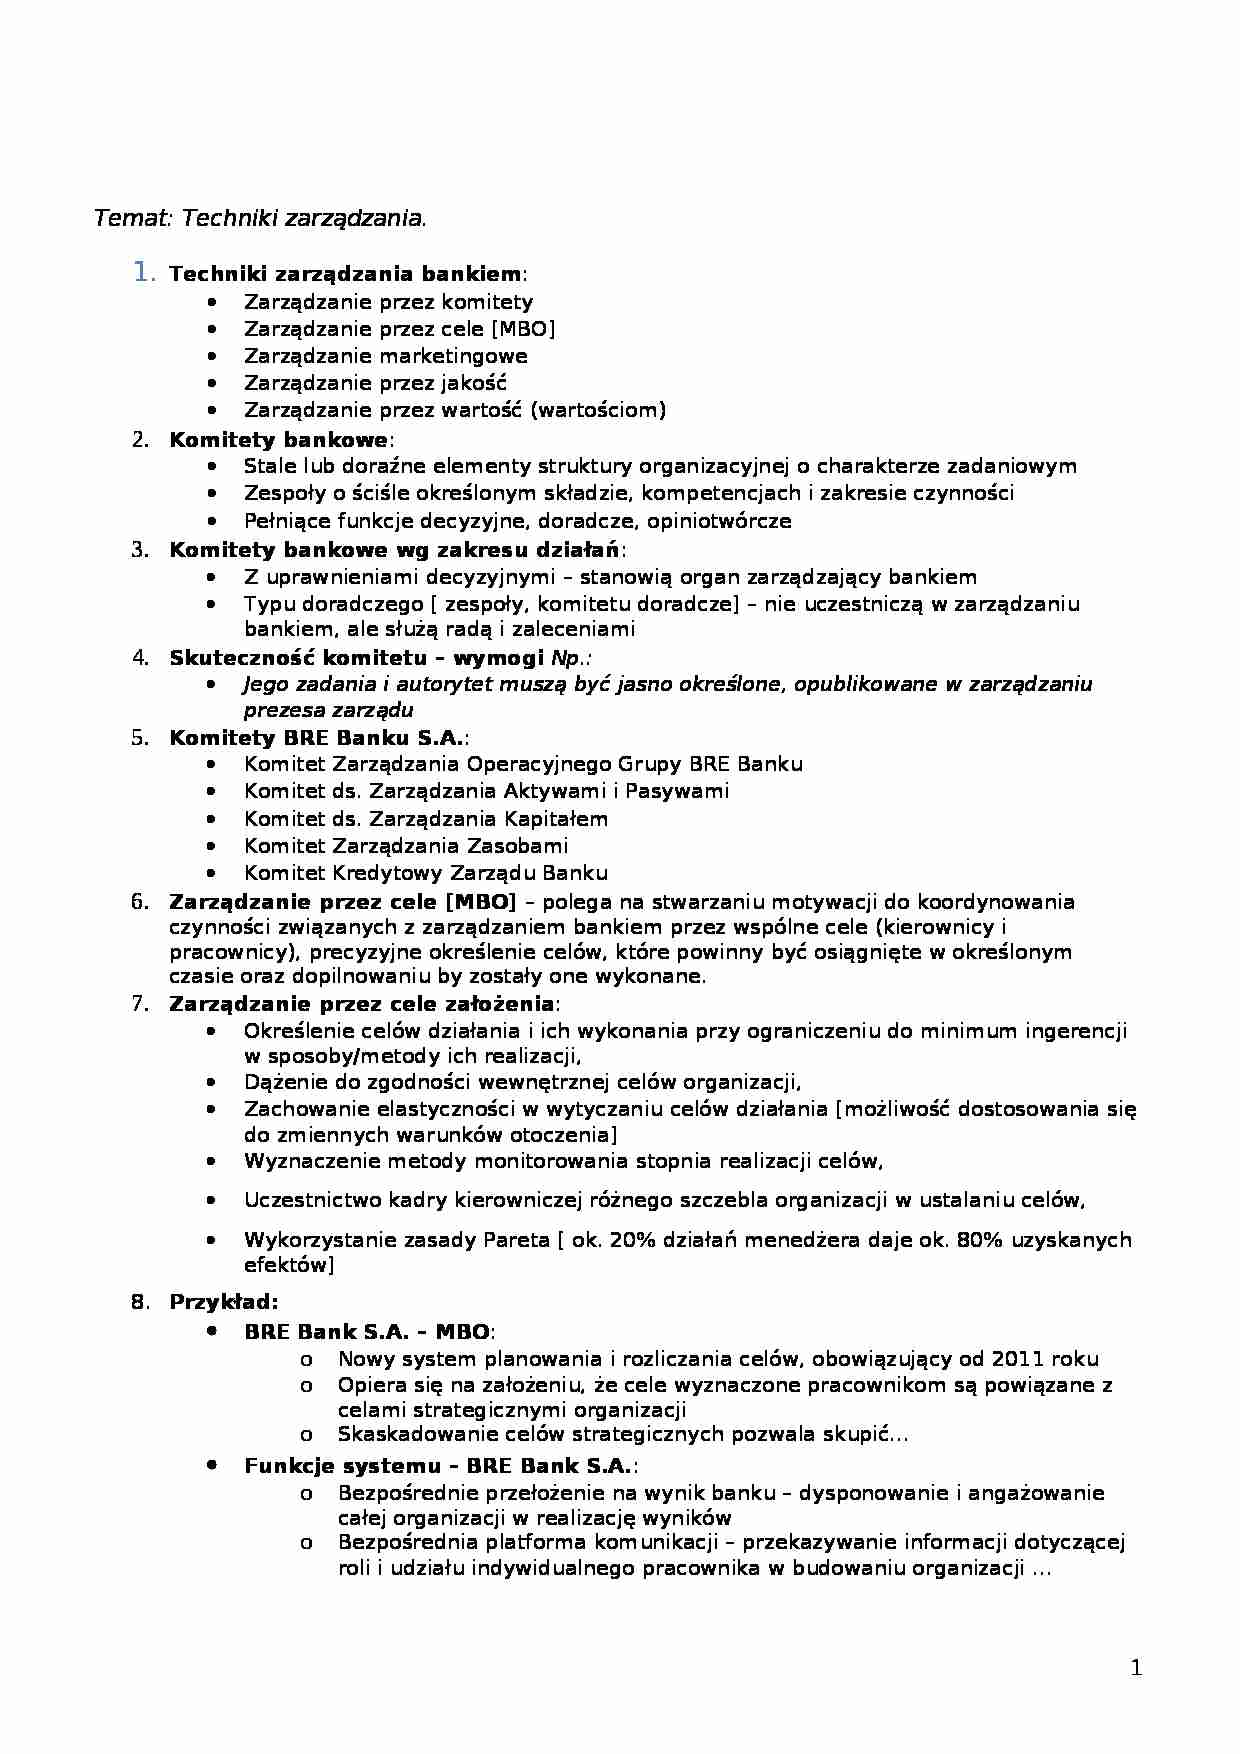 Techniki zarządzania-opracowanie - strona 1